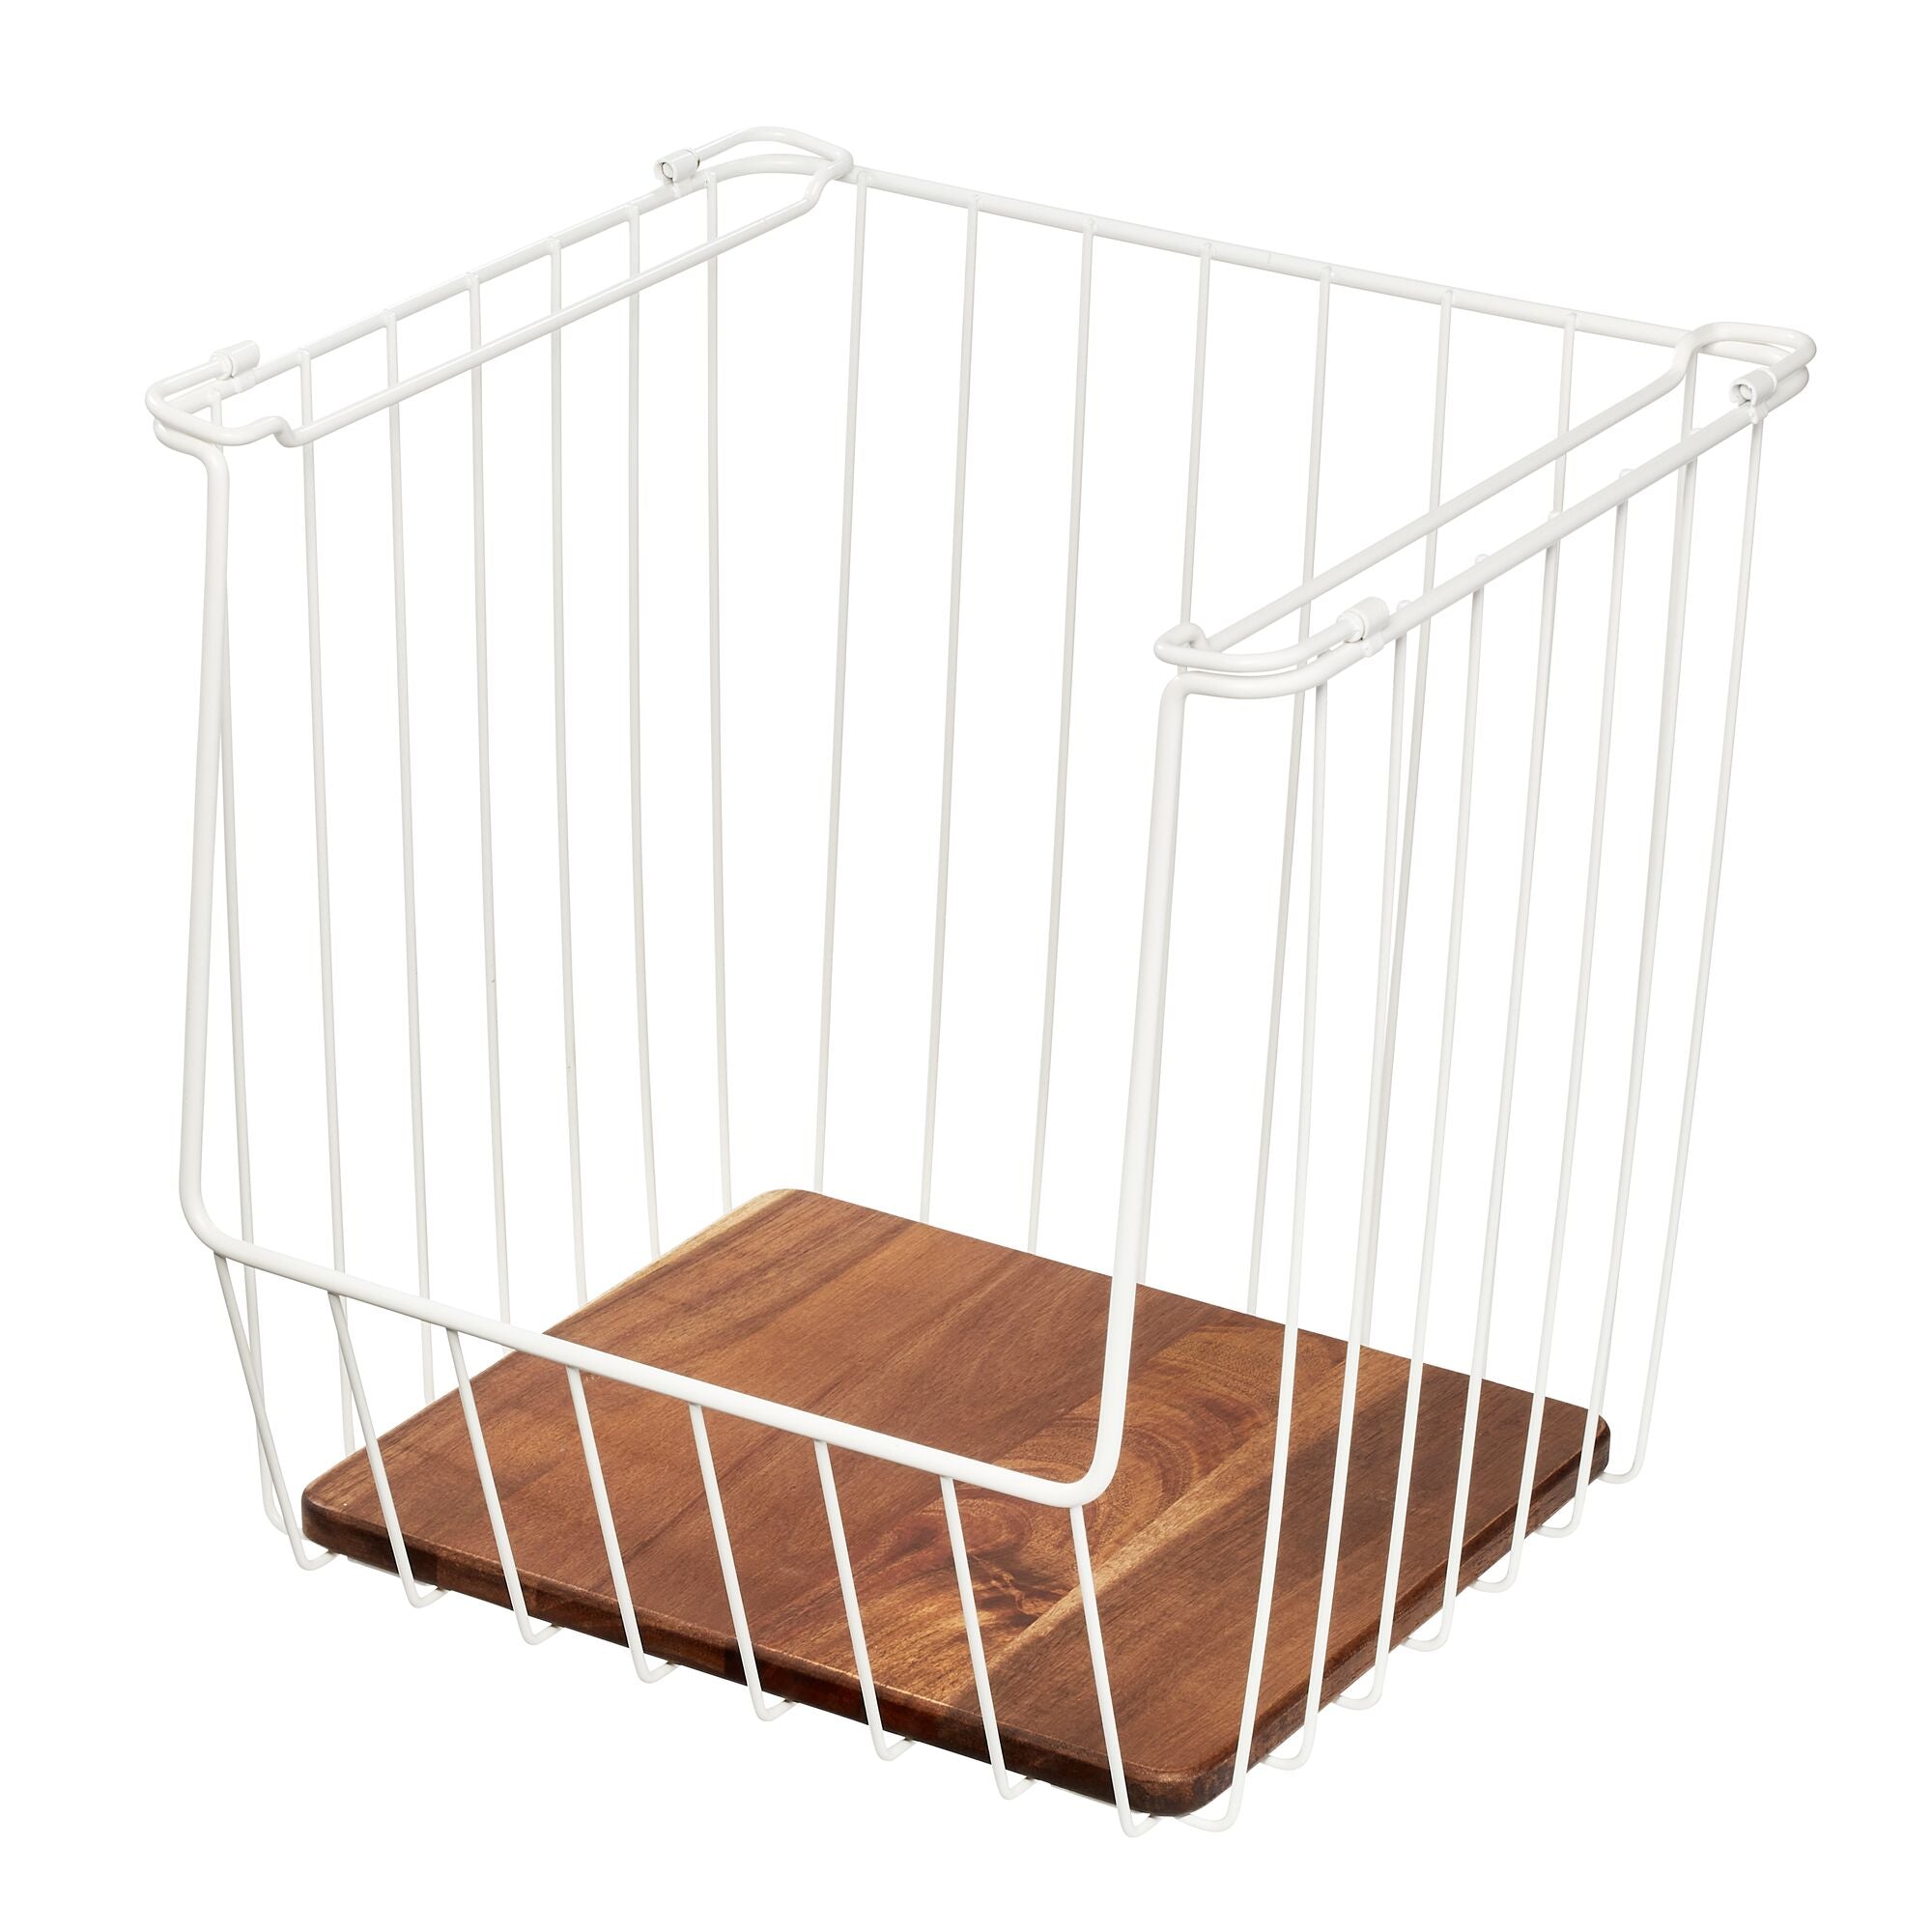 iDesign Stackable Basket